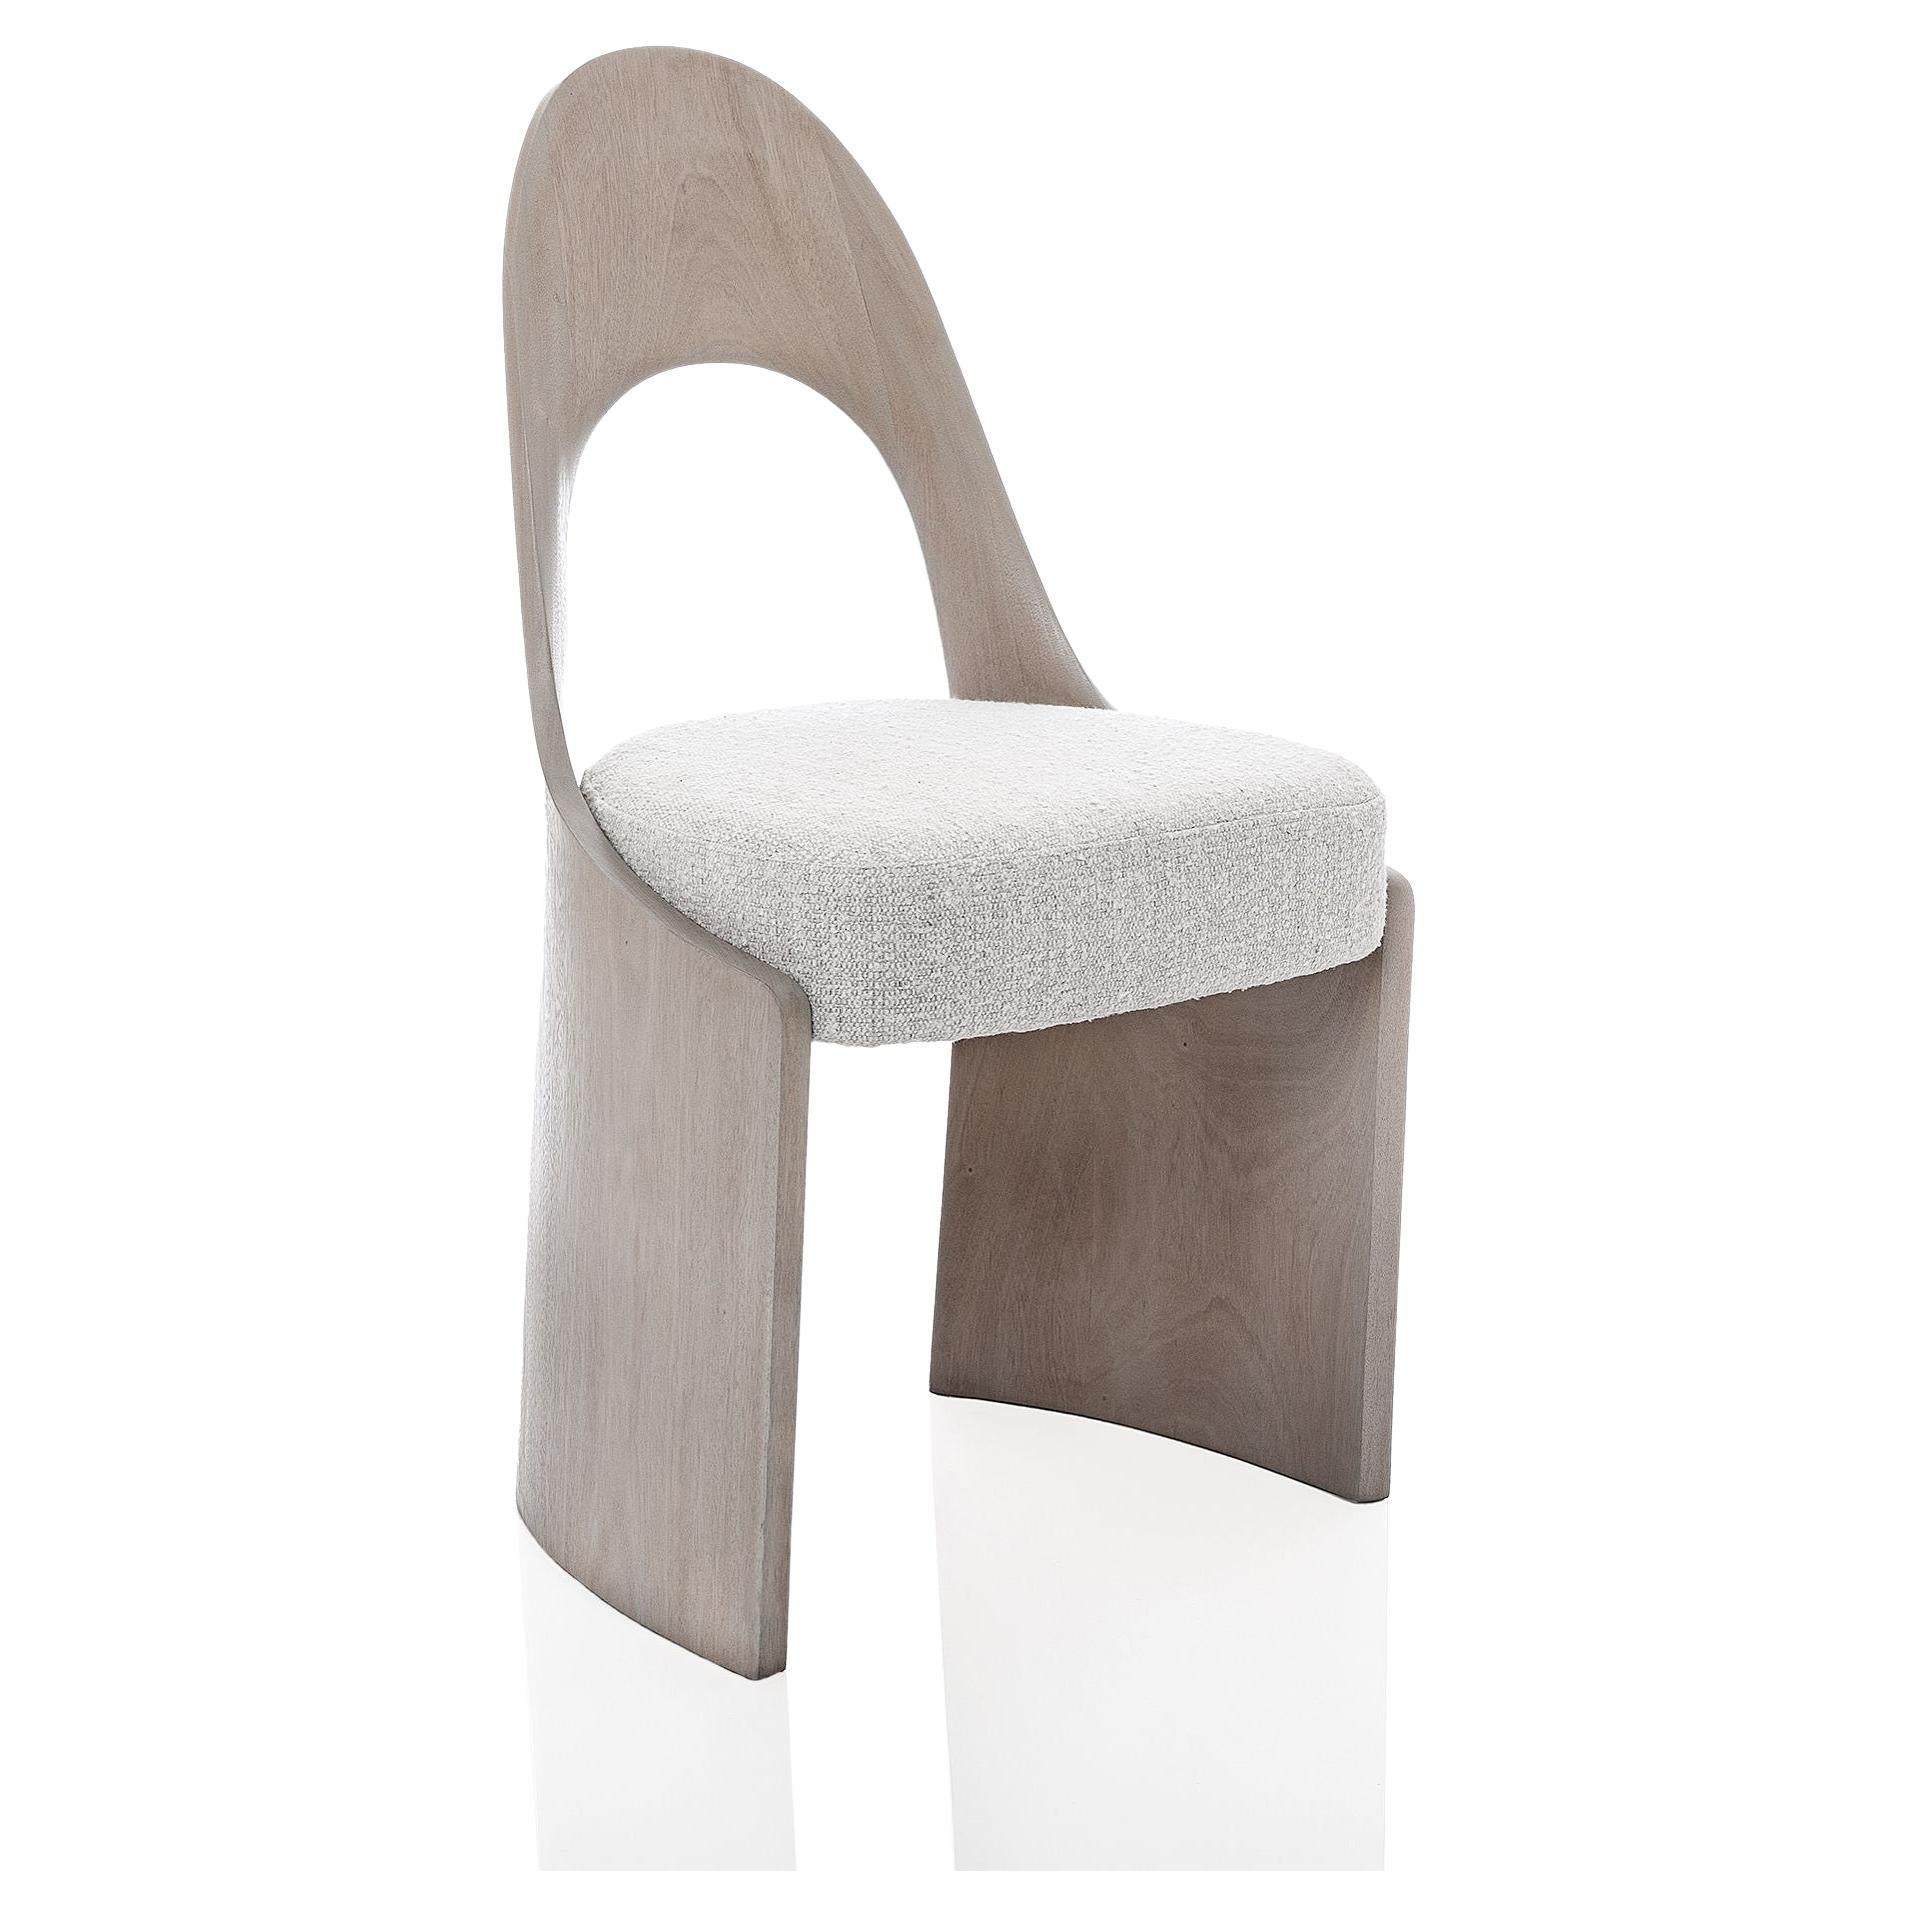 Studio Thomas Newman, "Gaia Chair", chaise à manger